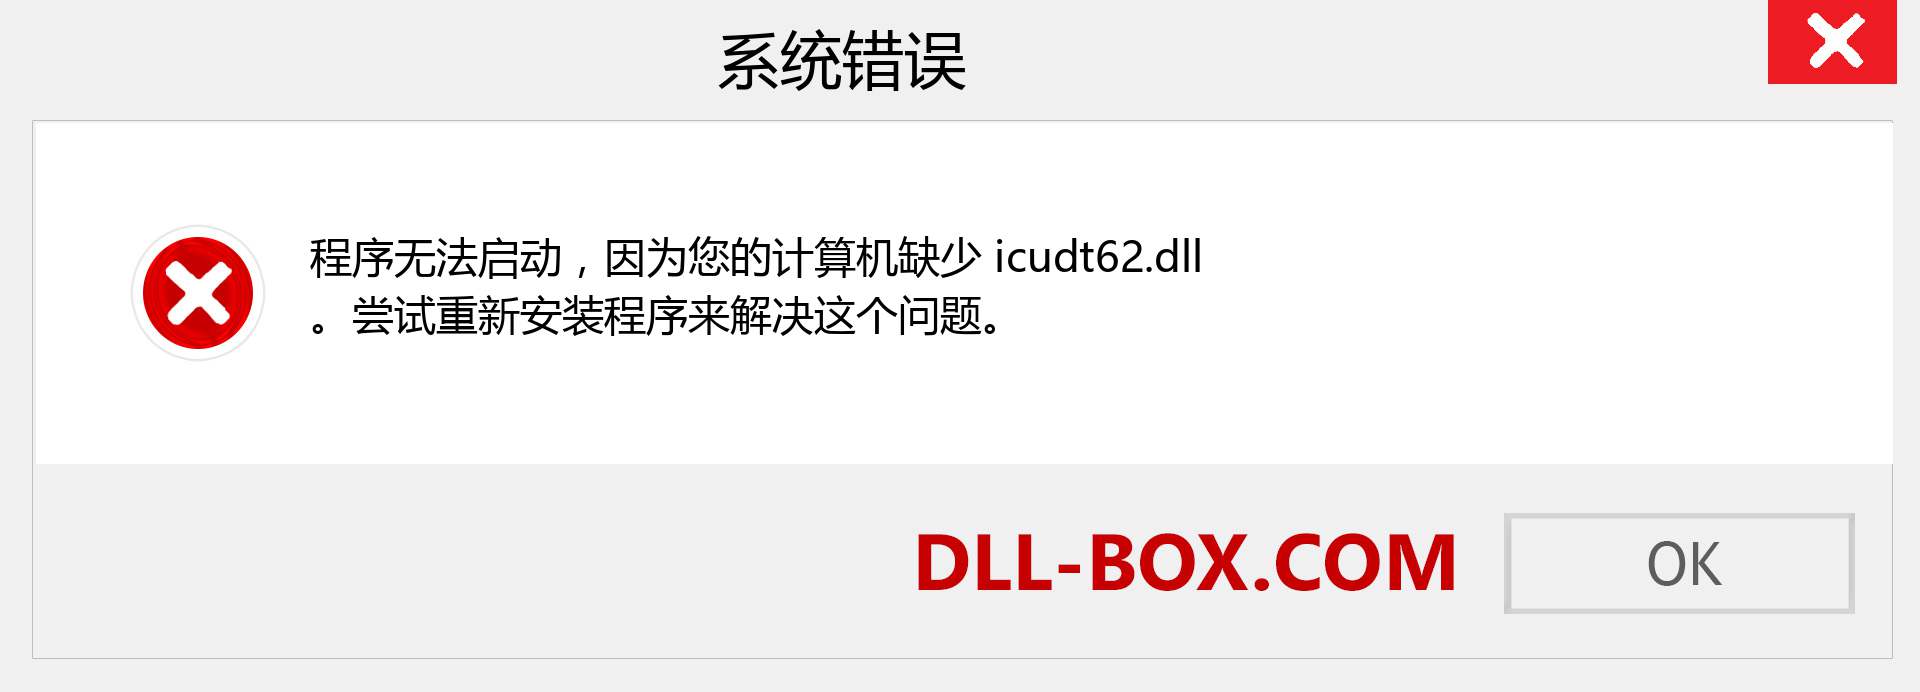 icudt62.dll 文件丢失？。 适用于 Windows 7、8、10 的下载 - 修复 Windows、照片、图像上的 icudt62 dll 丢失错误